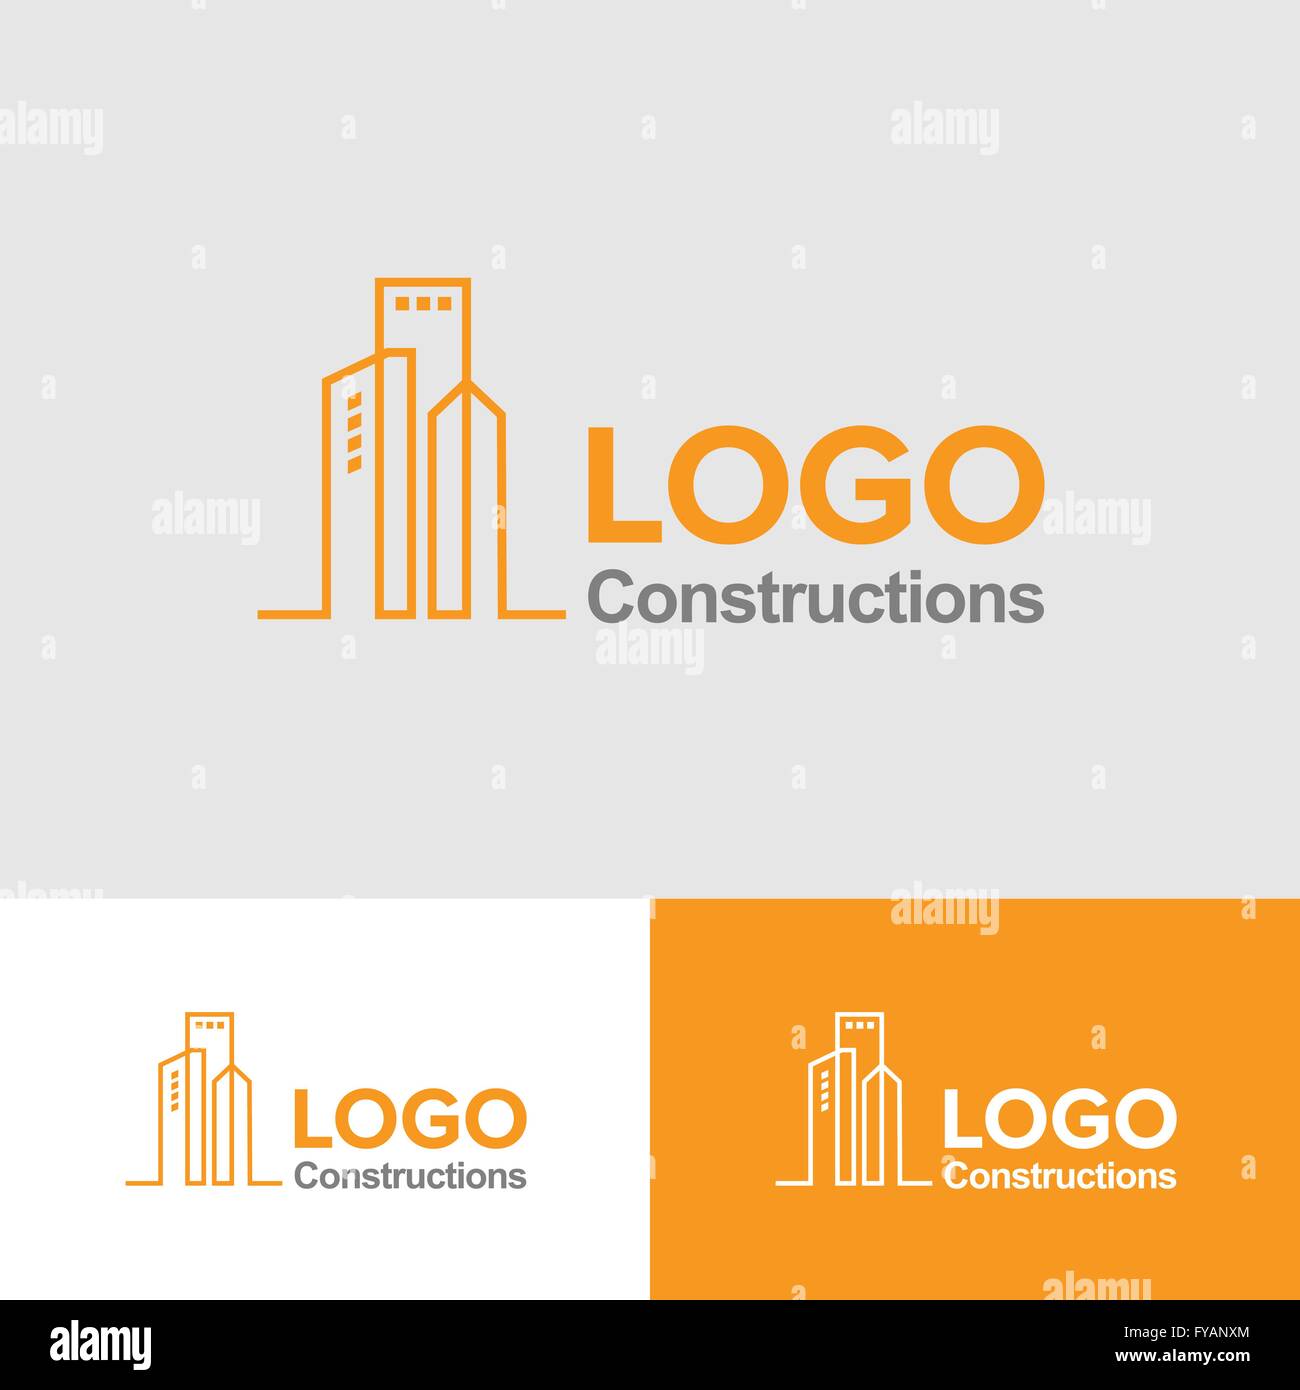 Creative Corporate Logo Design Template Professional Business Card e carta intestata il layout di progettazione completamente modificabile la grafica vettoriale Illustrazione Vettoriale